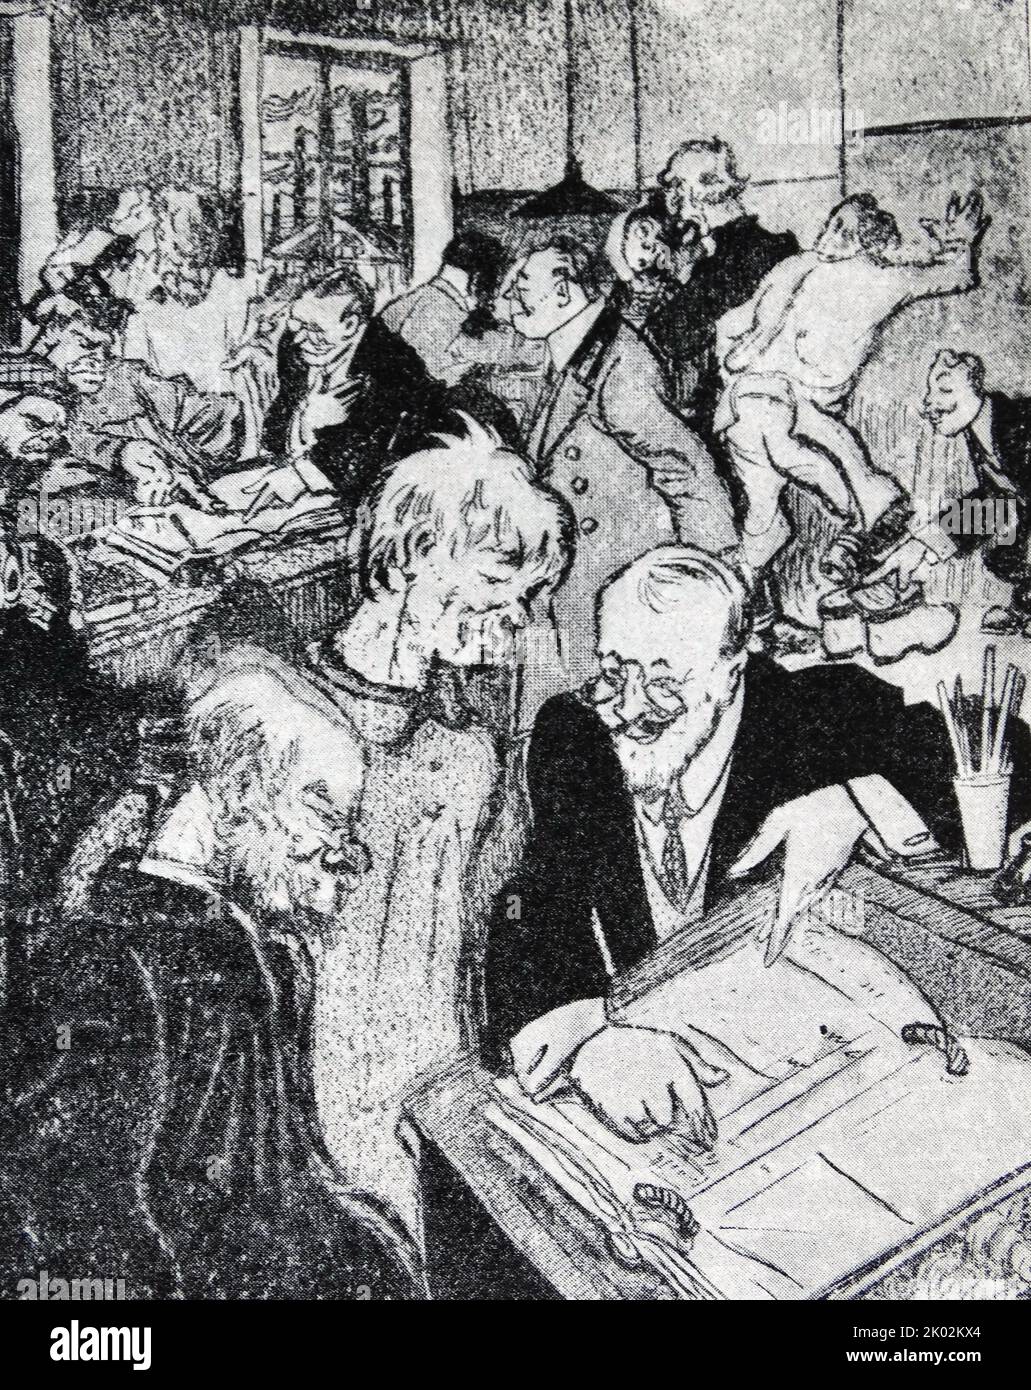 Karikatur von revolutionären Arbeitern, die die Kontrolle über eine Zeitschrift übernehmen. 1917. Stockfoto